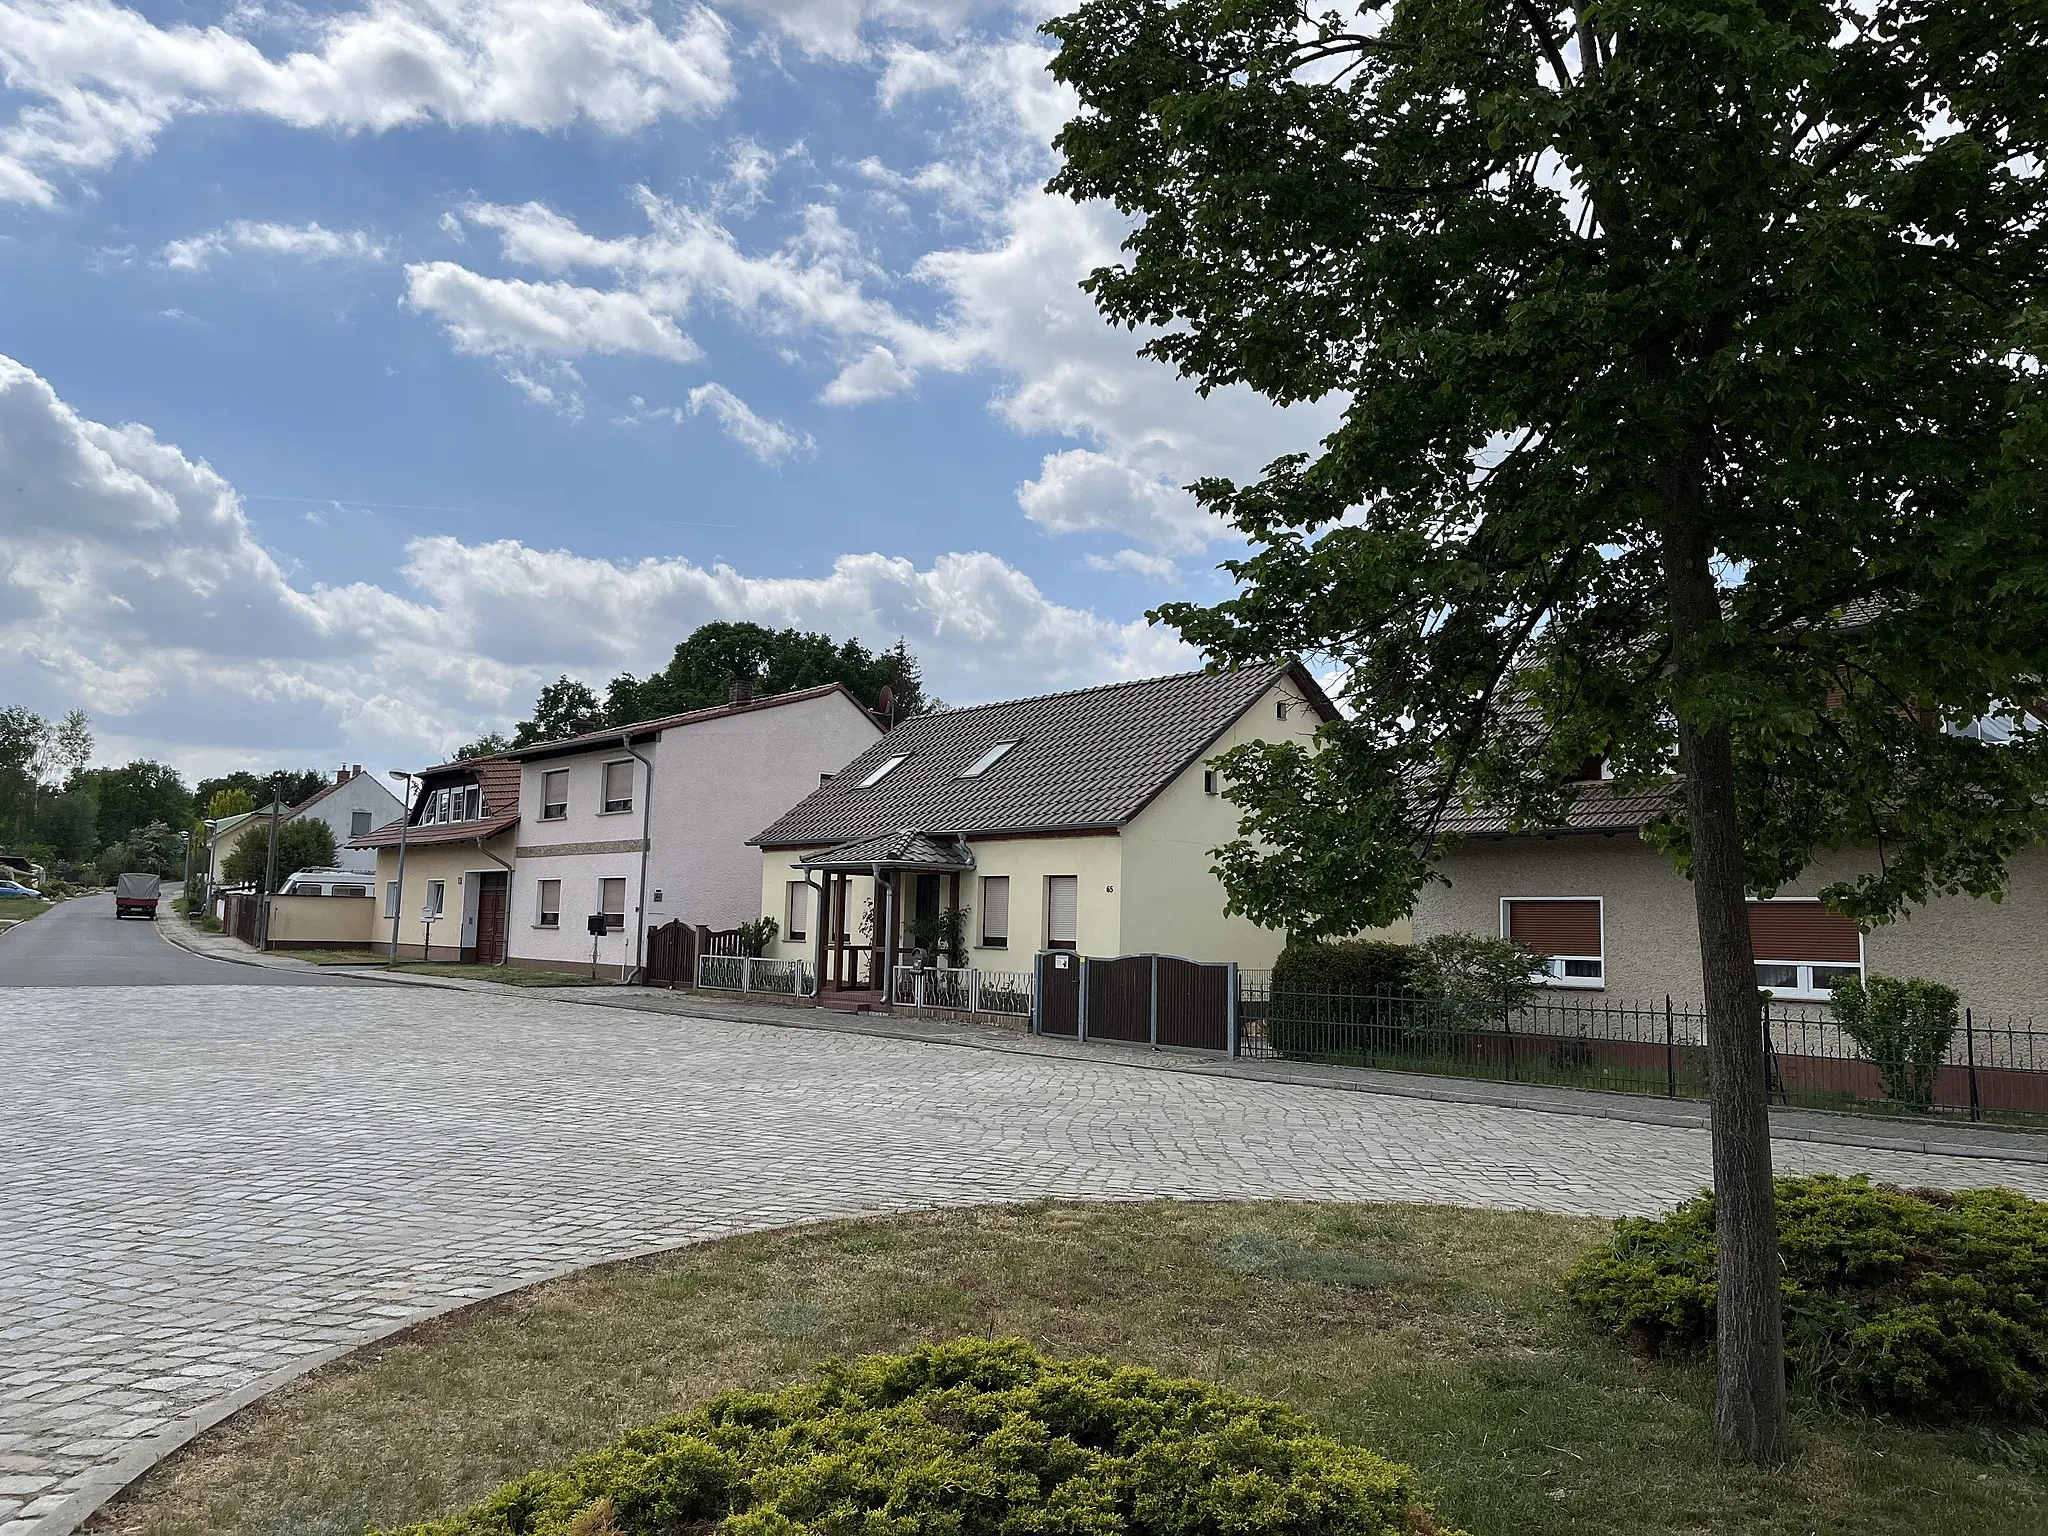 Photo showing: Niewitz ist ein Ortsteil der Gemeinde Bersteland im Landkreis Dahme-Spreewald in Brandenburg.